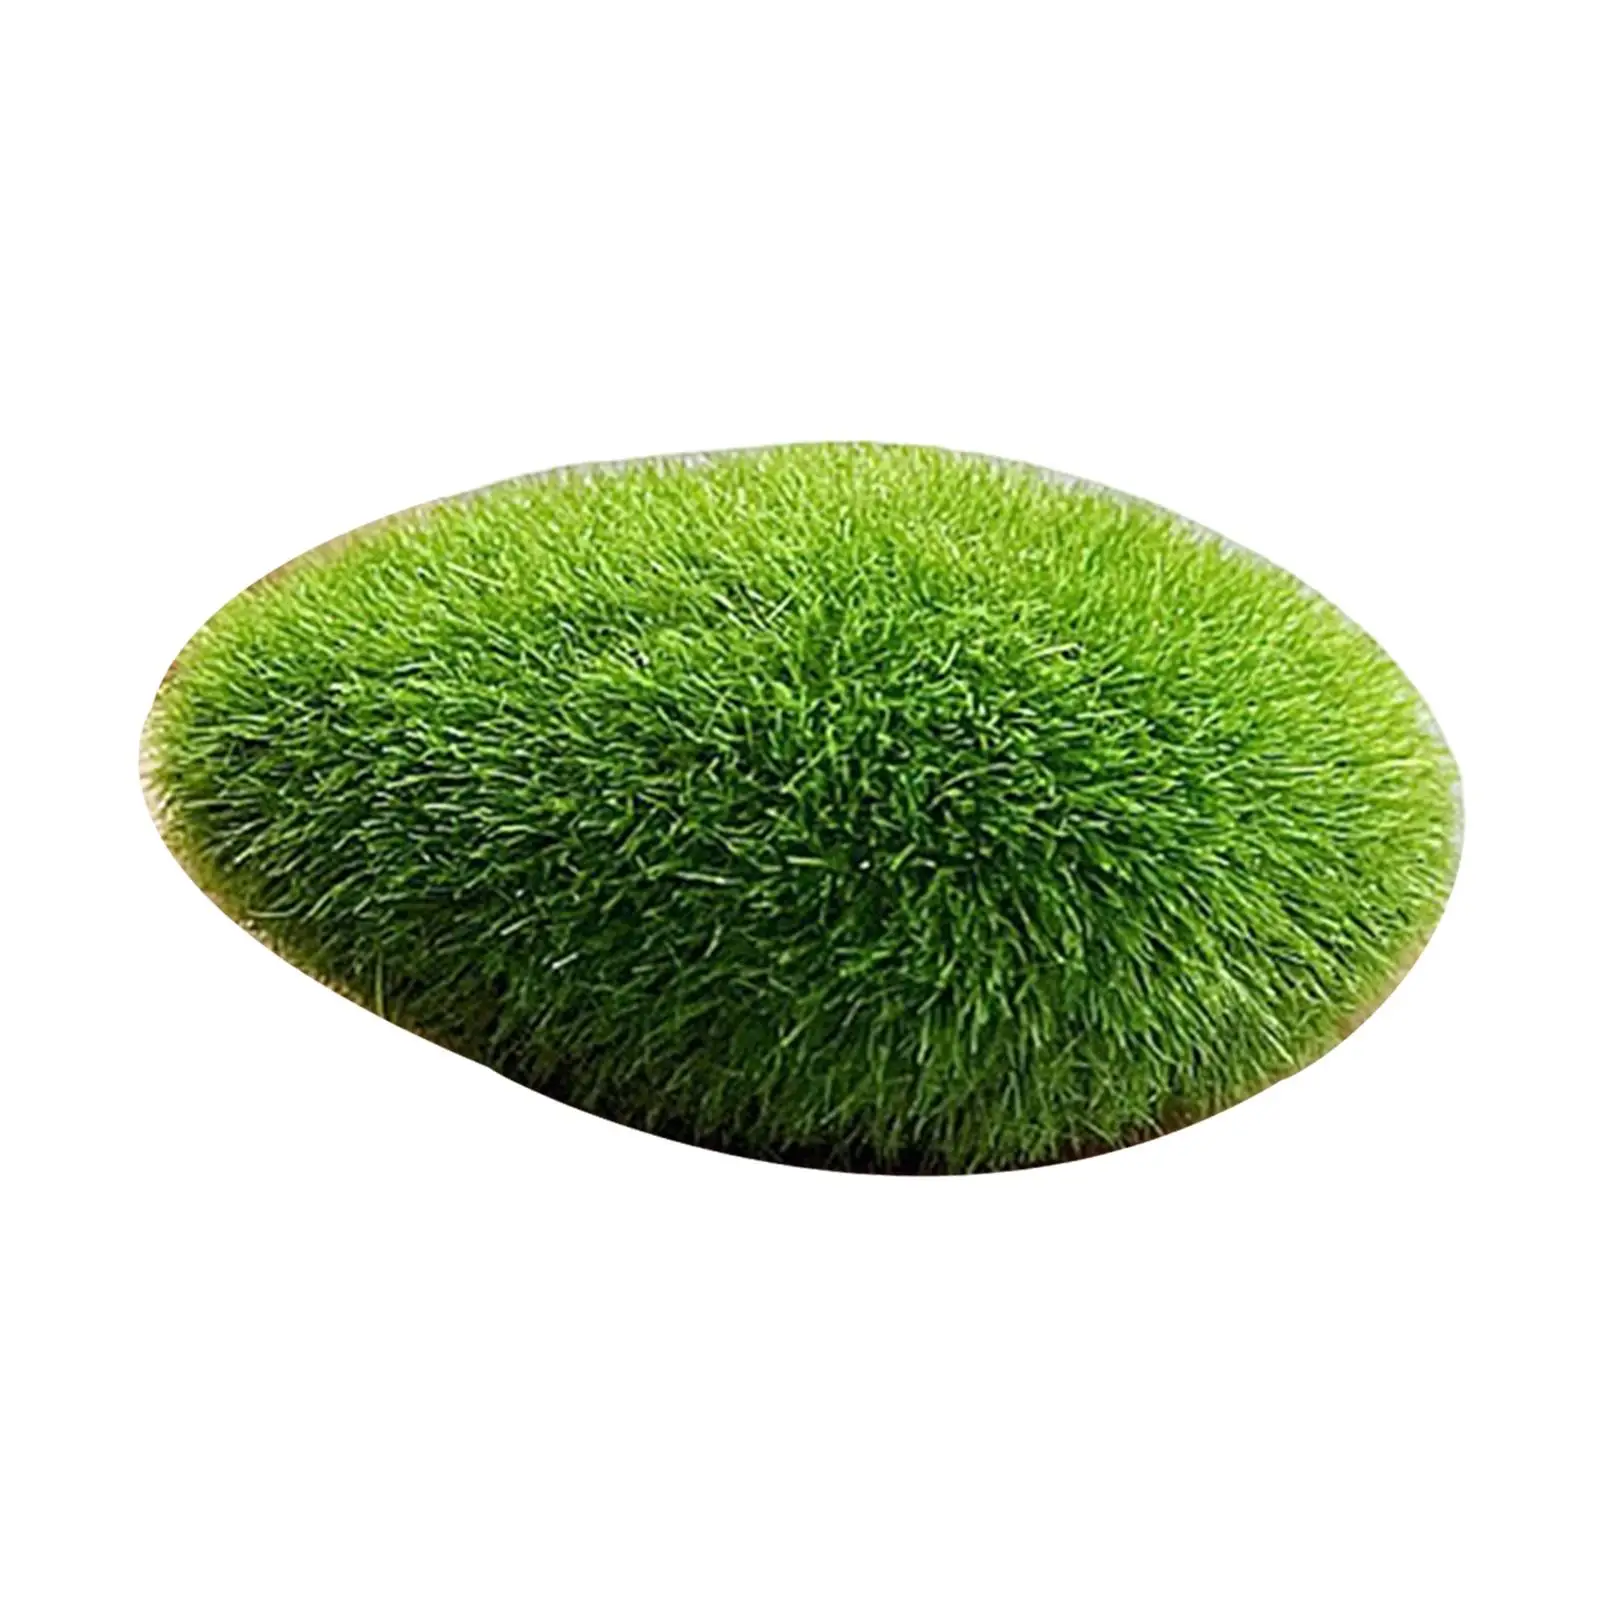 Artificial Moss Rocks Moss Stones Green Moss Balls Faux Bryophytes Mini for Miniature Garden Weddings Home Decor